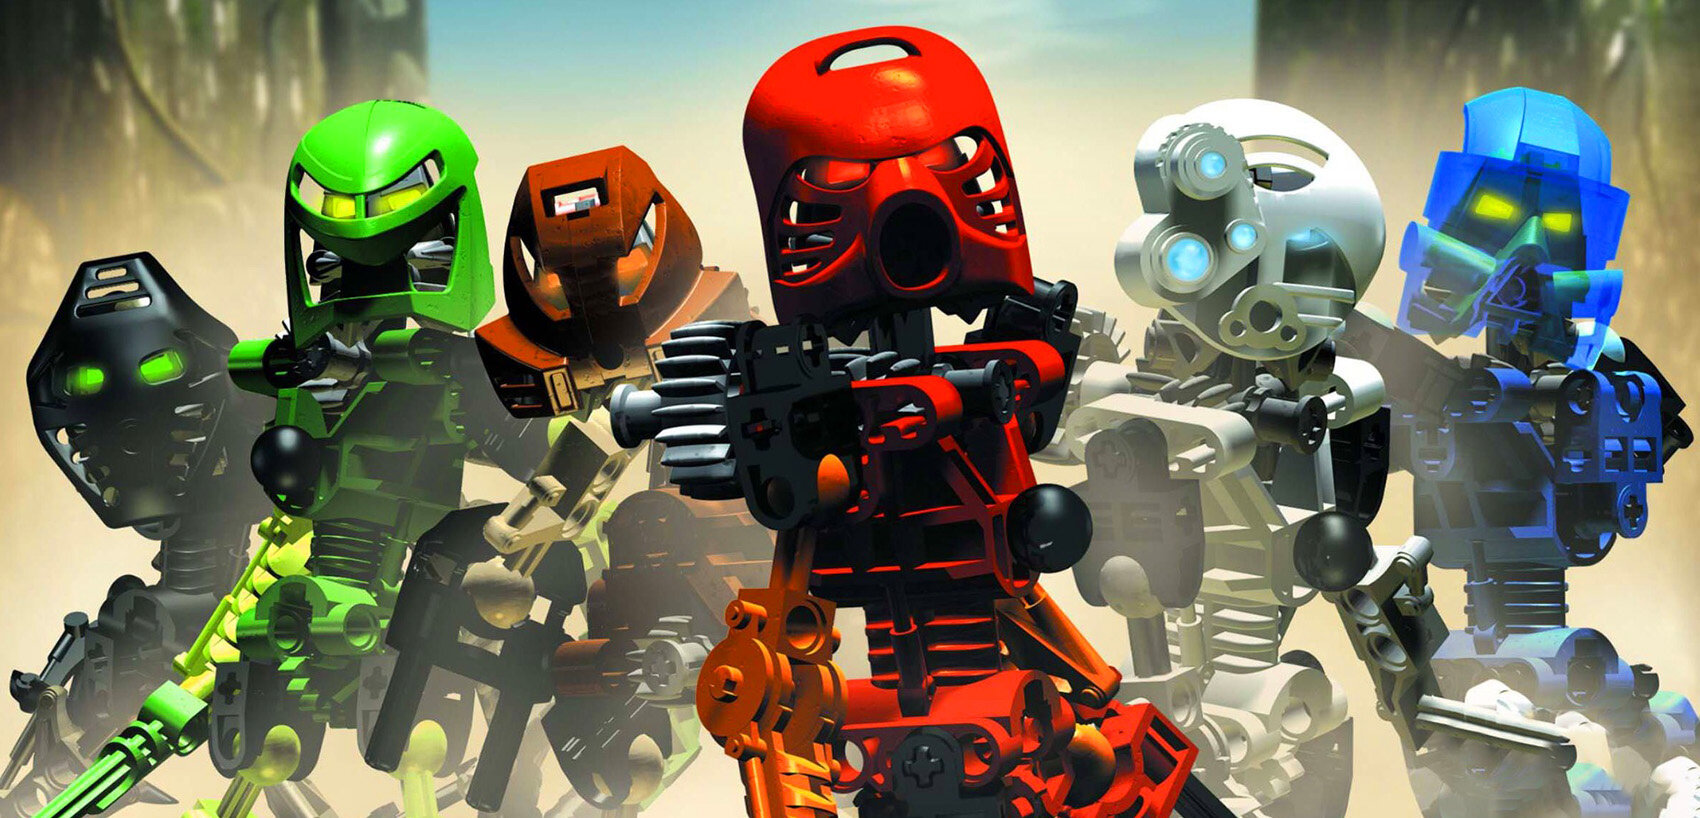 LEGO Bionicle - Všechny informace na jednom místě